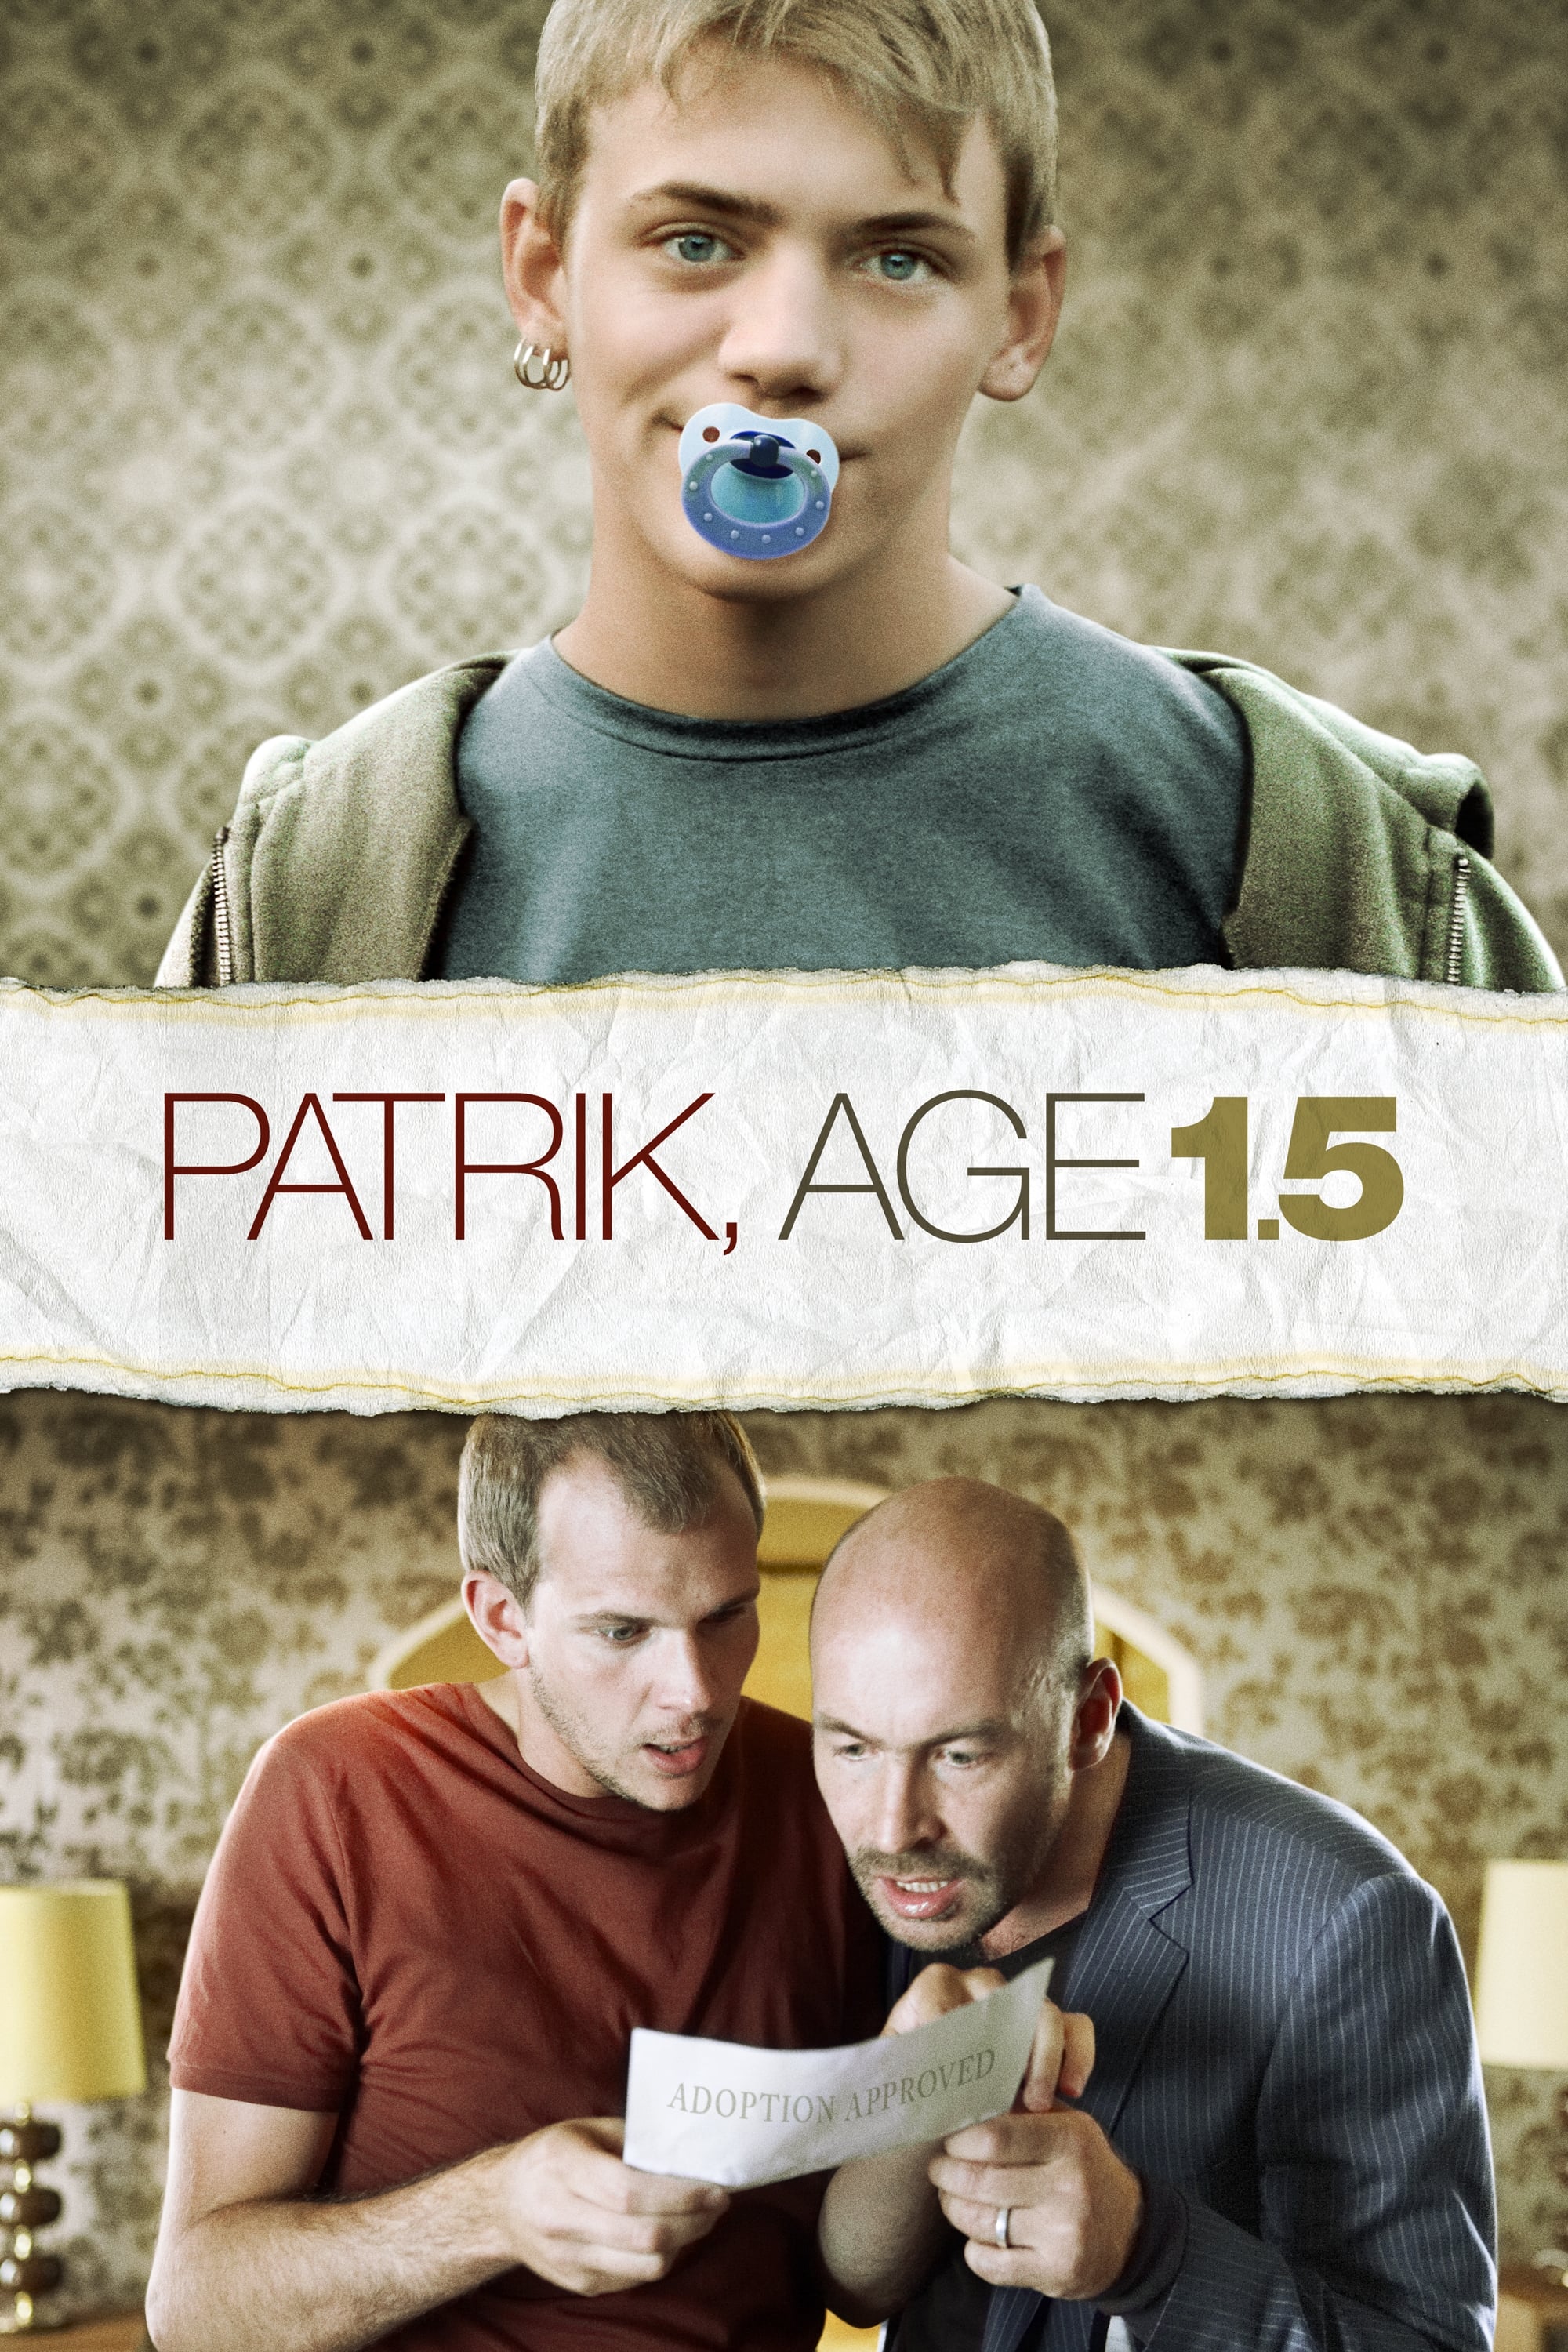 Patrik, Age 1.5 (2008)